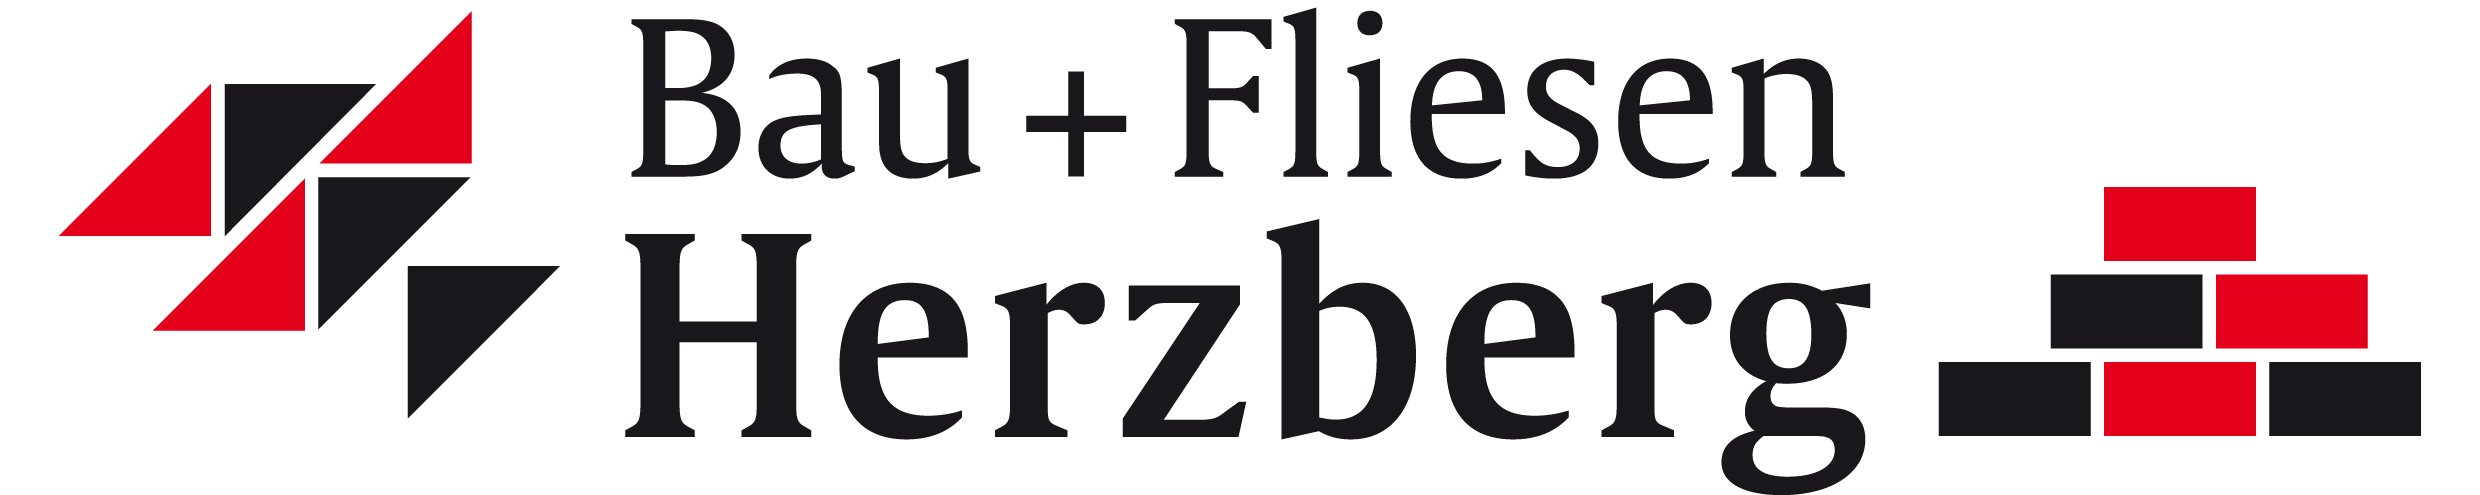 Bau- und Fliesen Herzberg GmbH & Co. KG